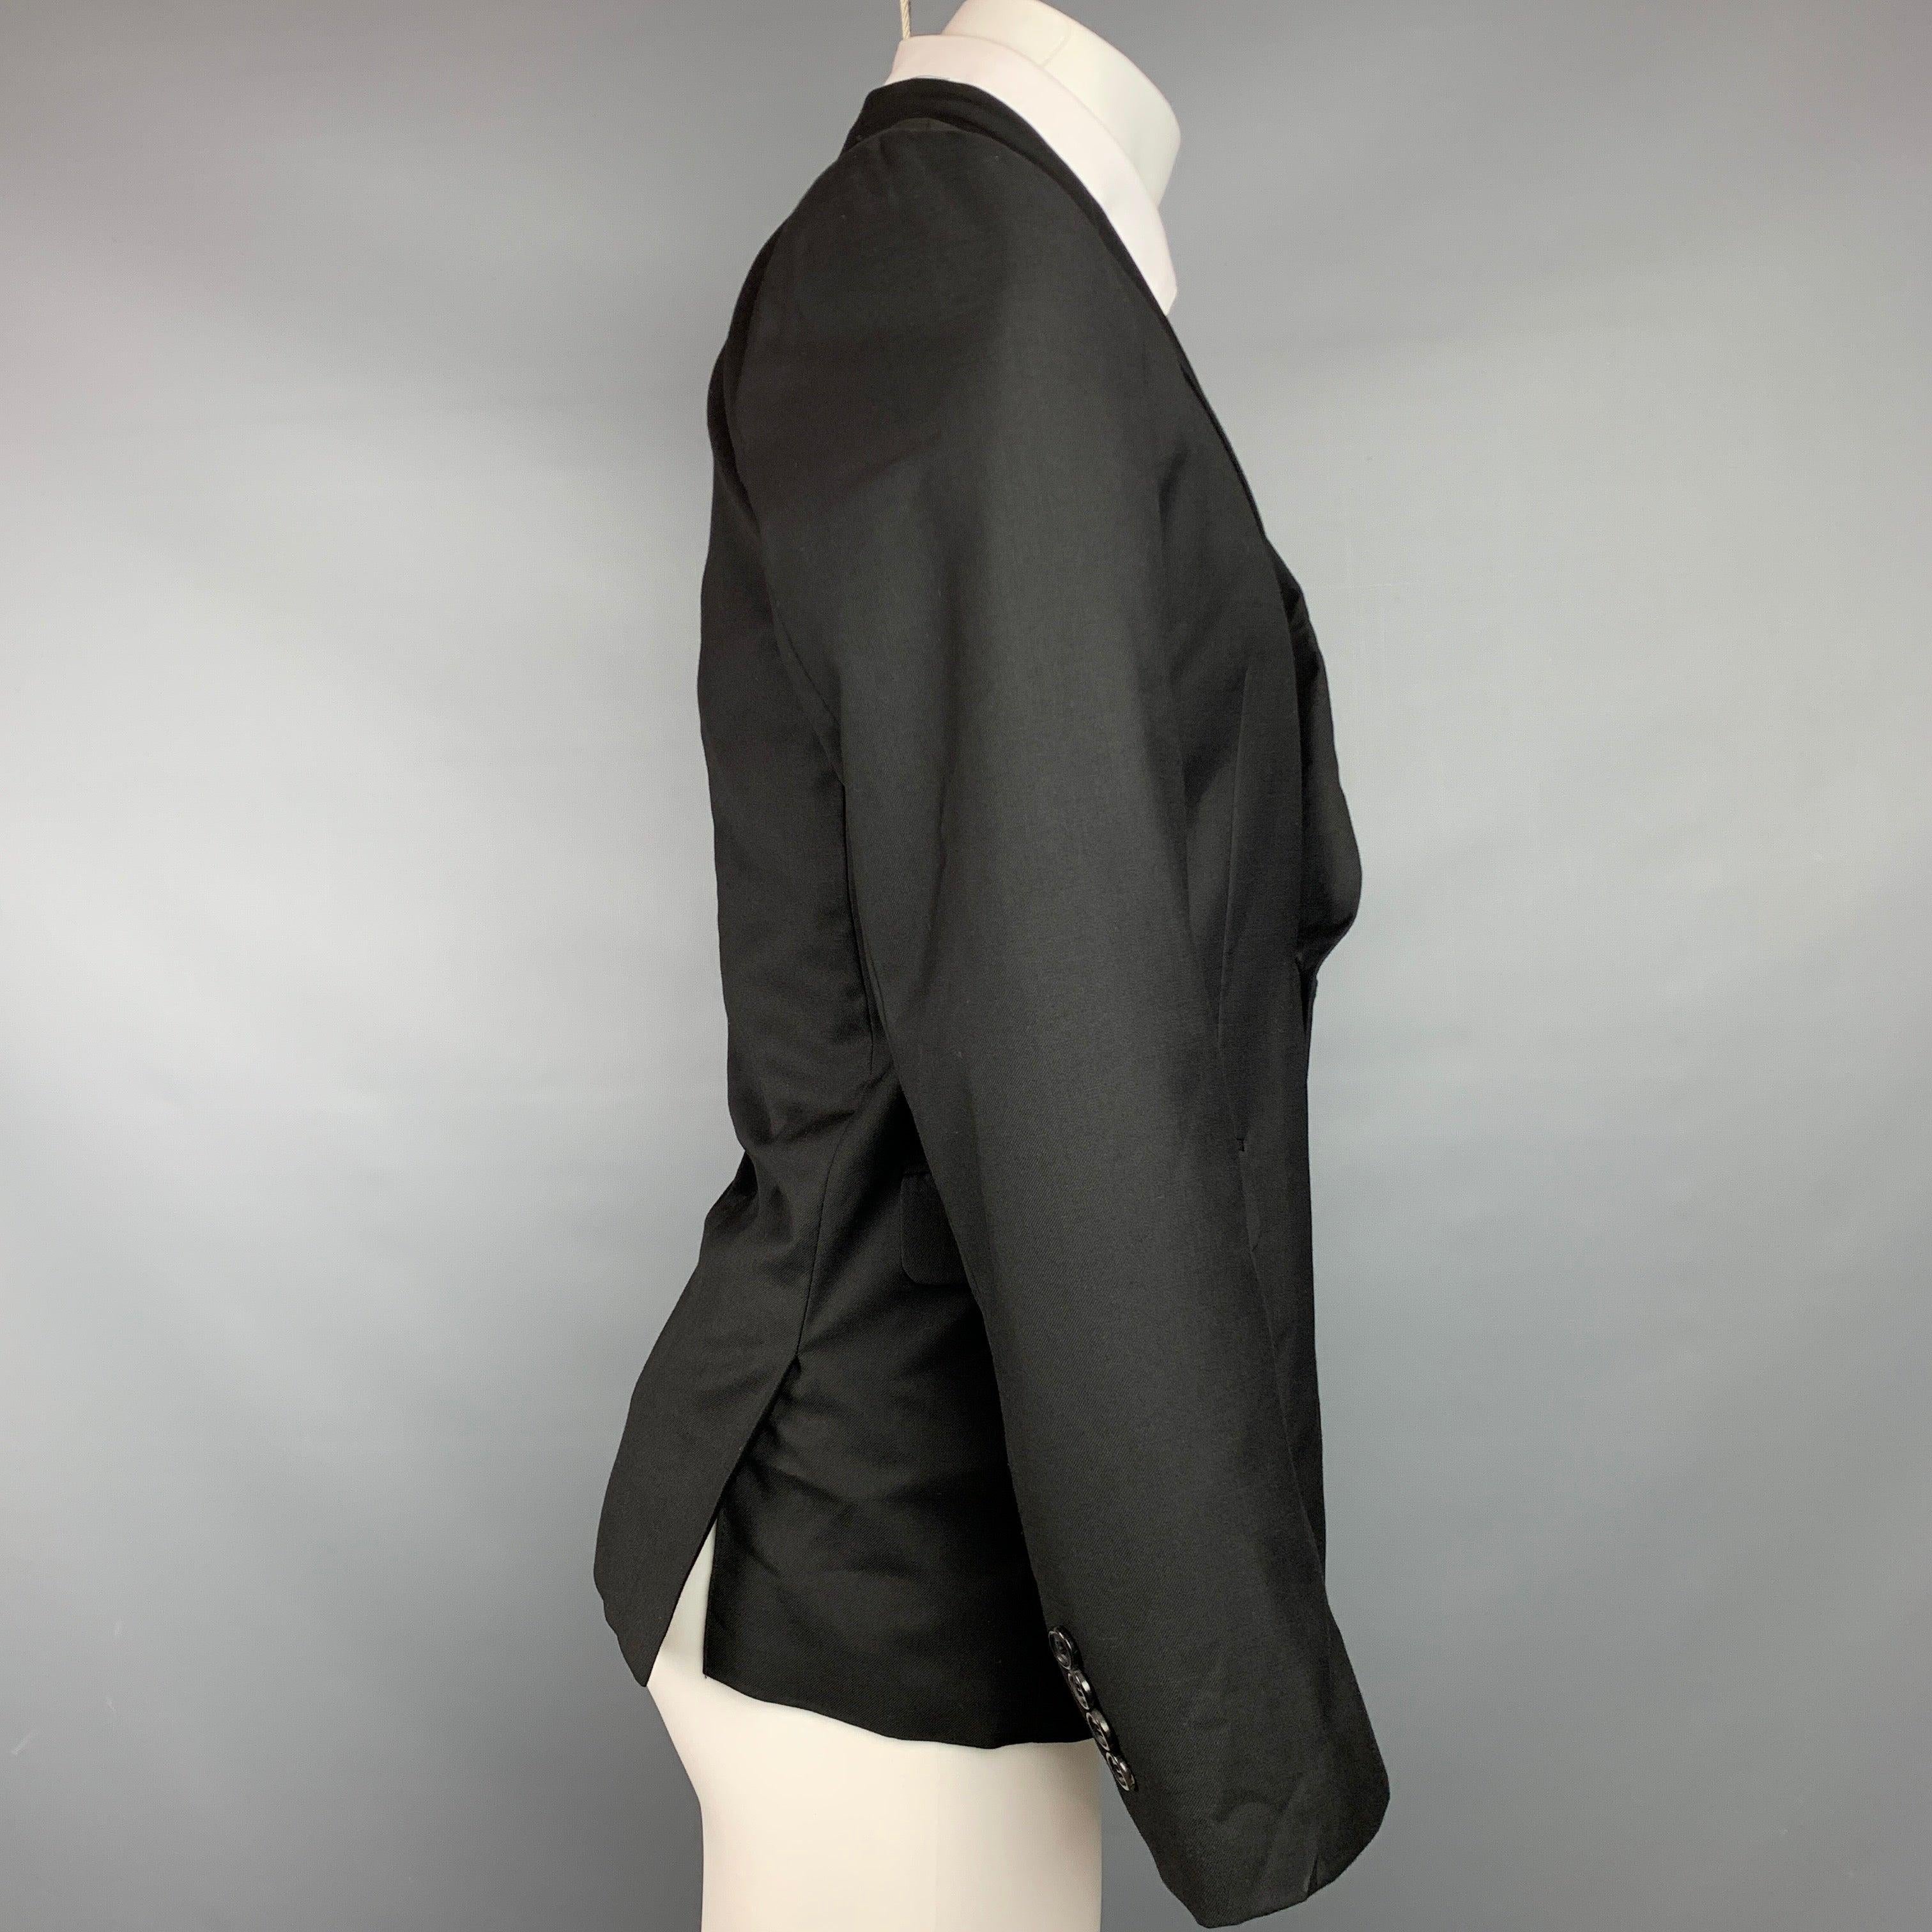 KRIS VAN ASSCHE Size 38 Black Wool Peak Lapel Sport Coat In Good Condition For Sale In San Francisco, CA